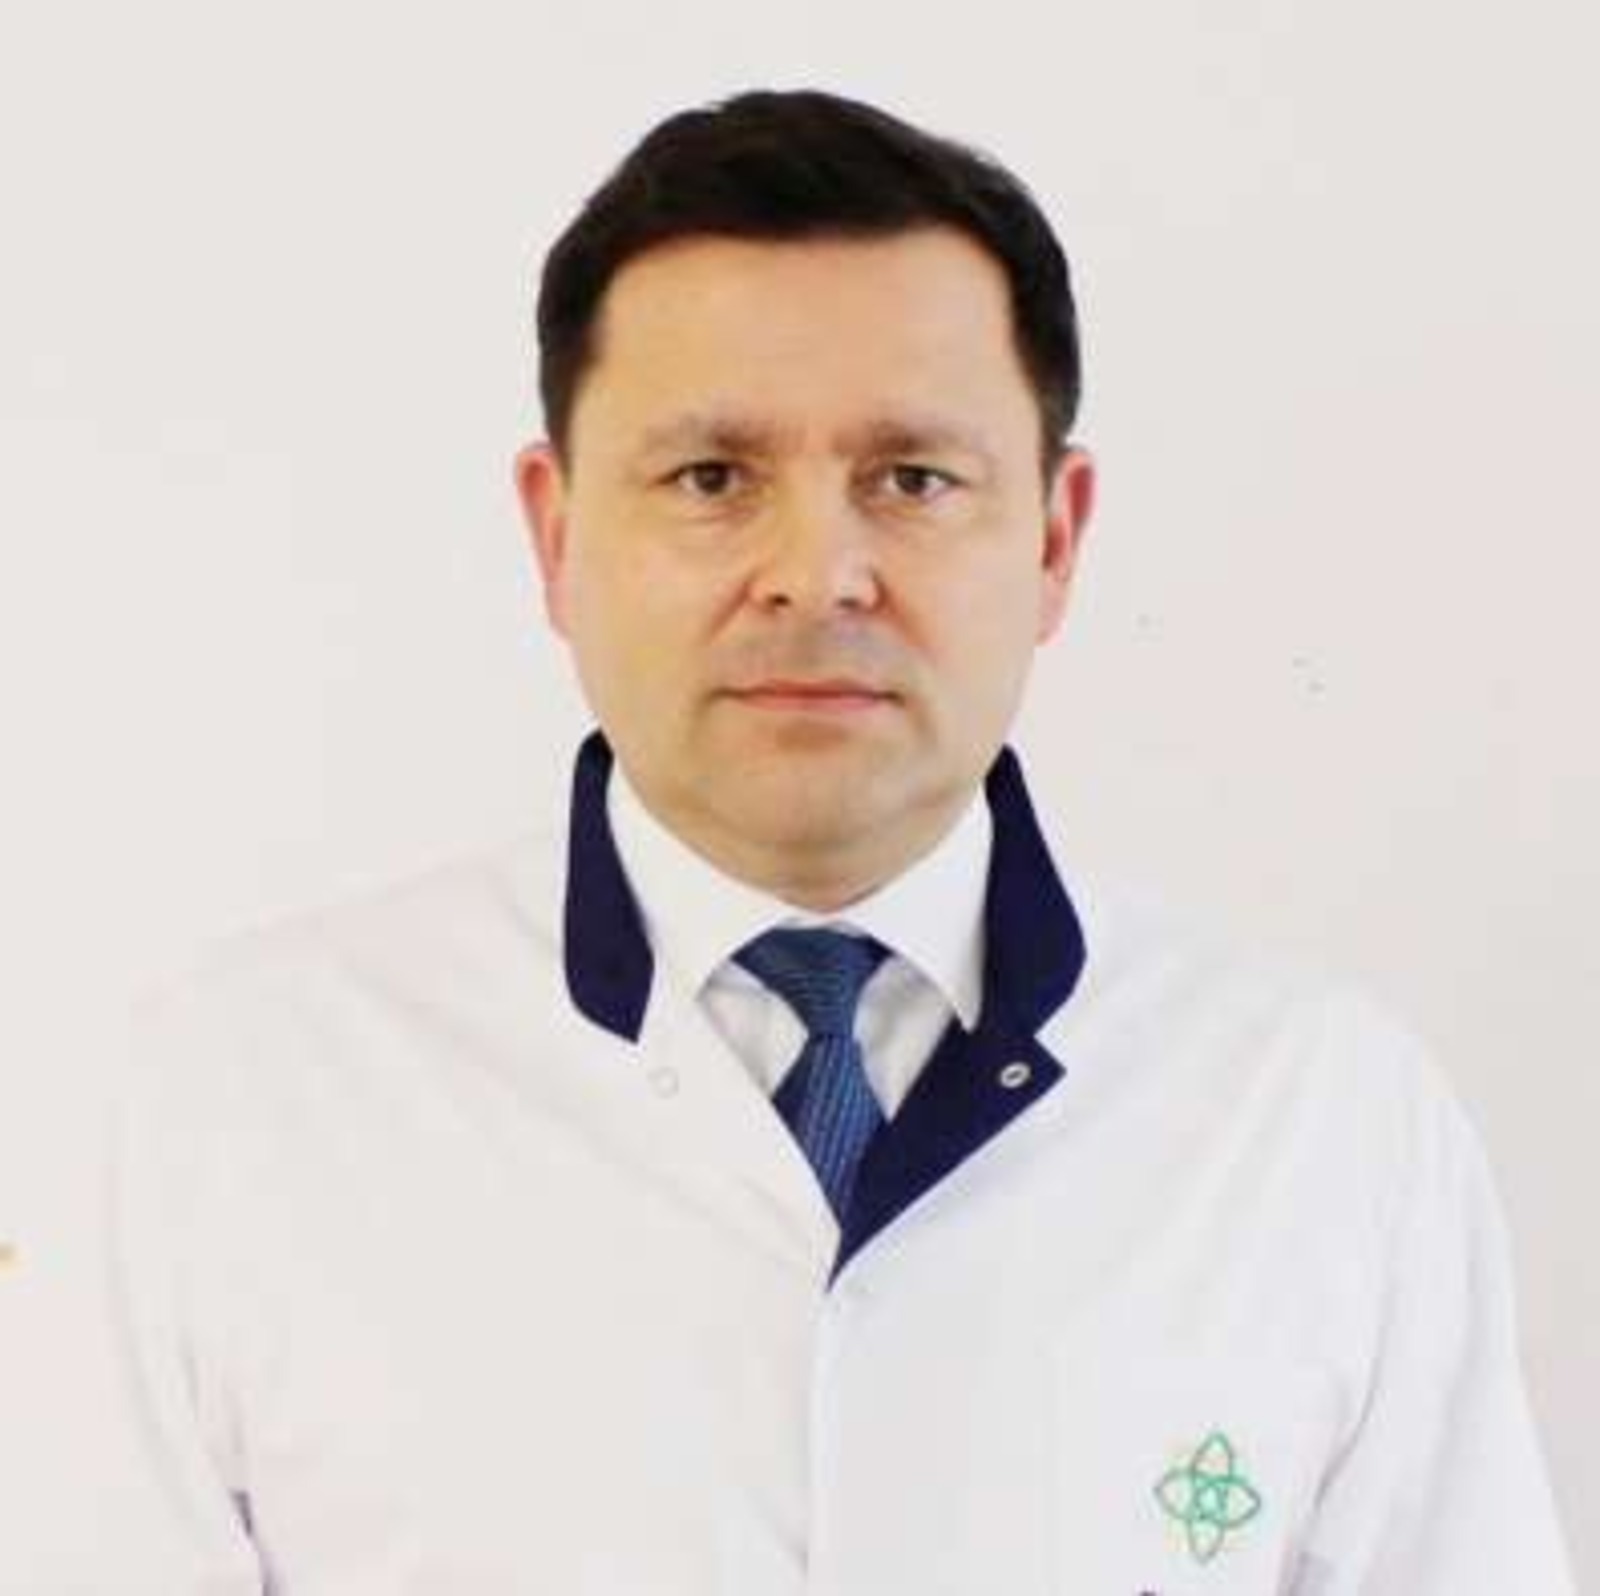 Республика клиник дауаханаһының баш табибы Шамил Булатов үҙ вазифаһын ҡалдыра